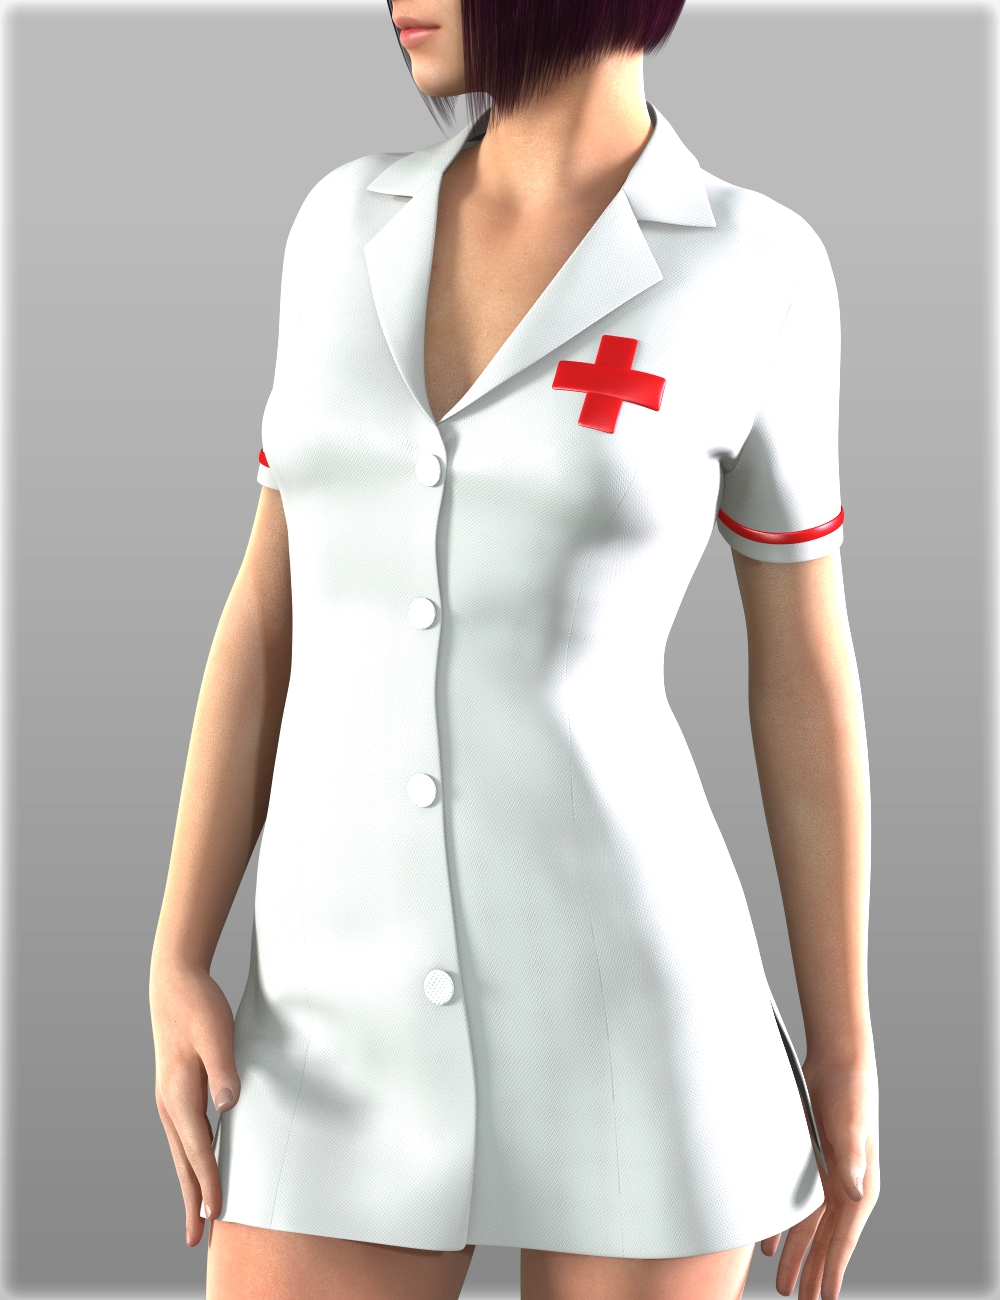 Sexy costume Obsessive Nurse costume